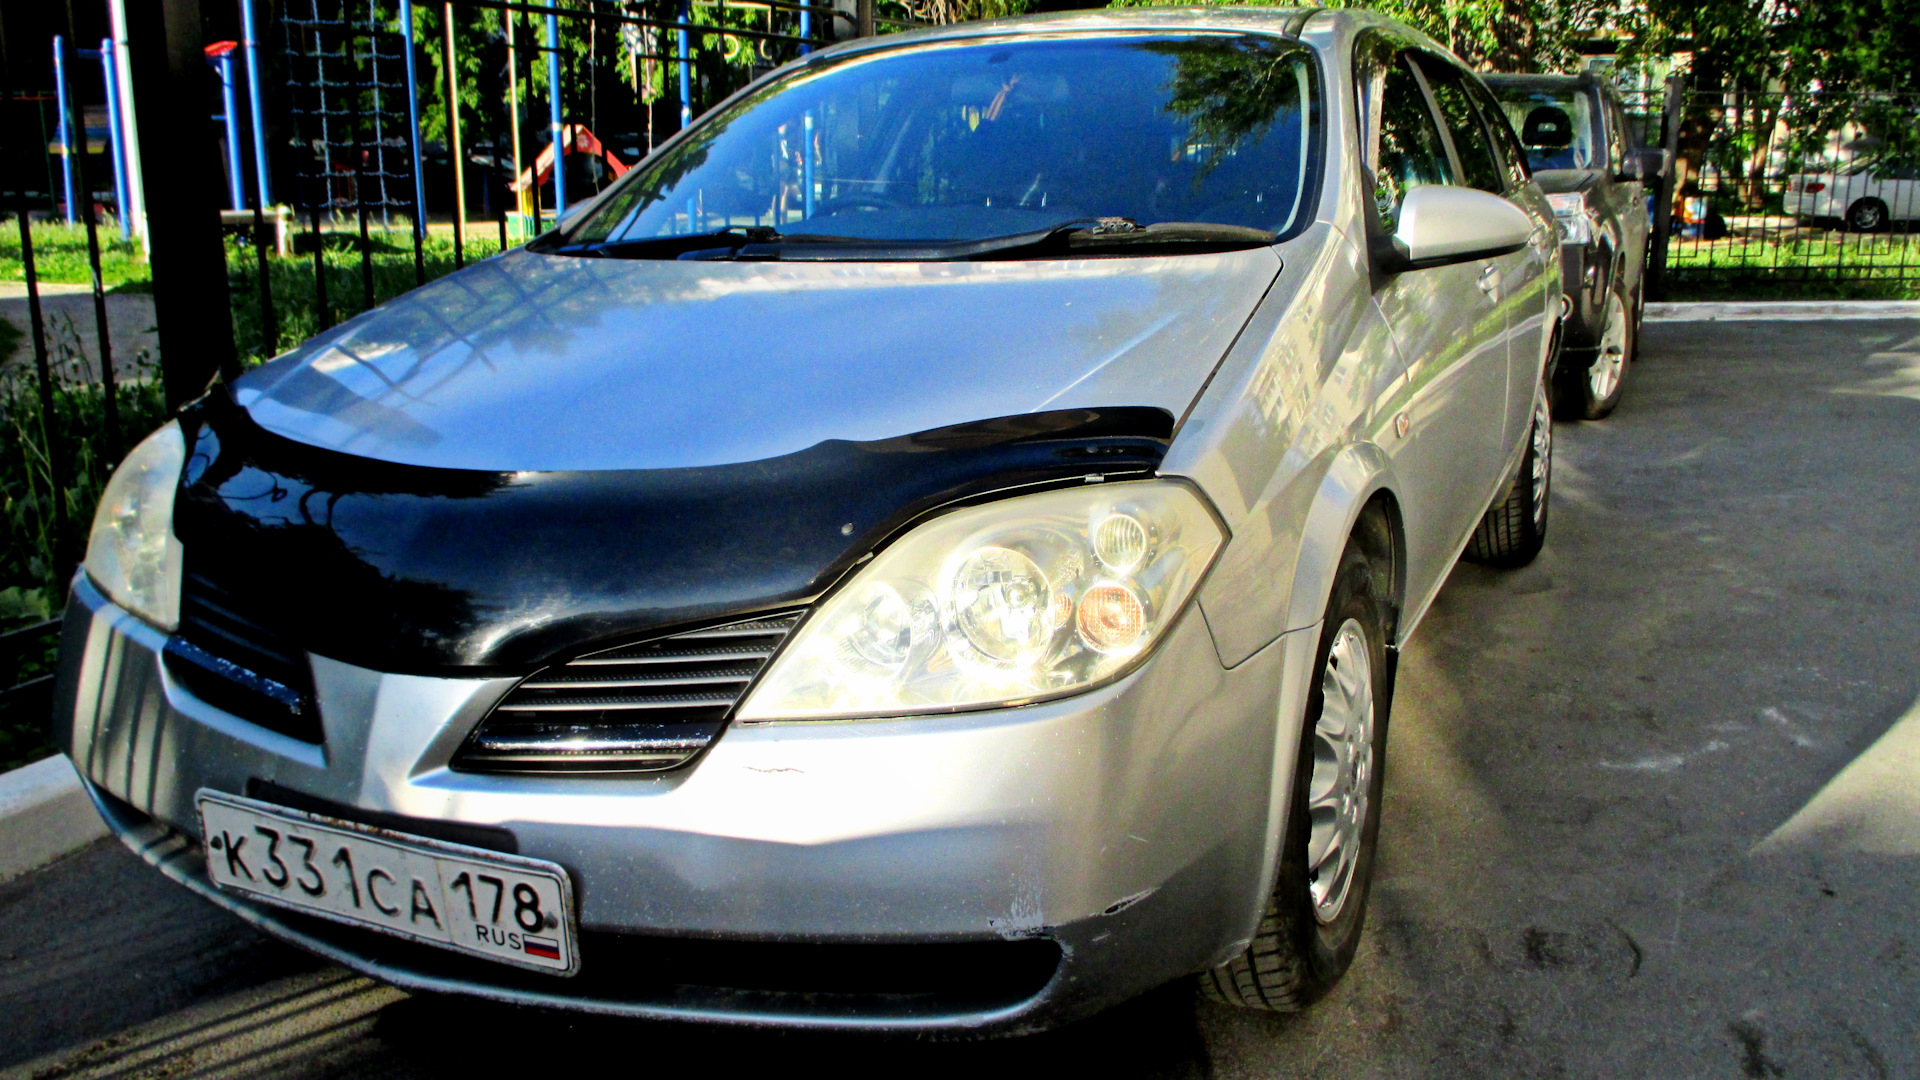 Примера р12 капот. Мухобойка Nissan primera p12. Дефлектор Nissan primera p12. Ниссан премьера 2007 мухобойкой. Капот Nissan primera p12.